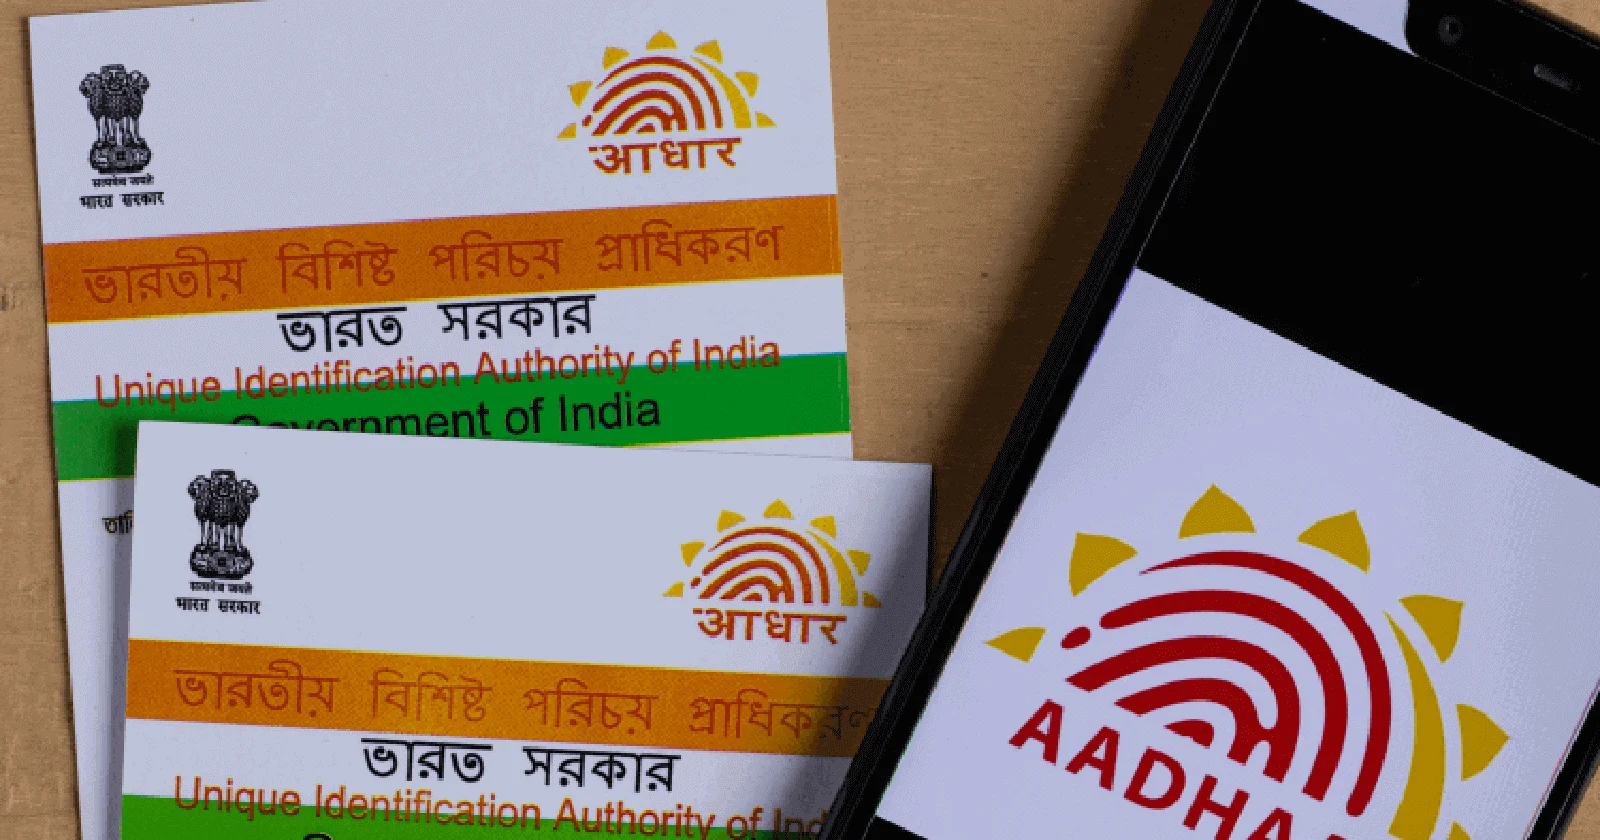 How to get a duplicate Aadhaar Card?